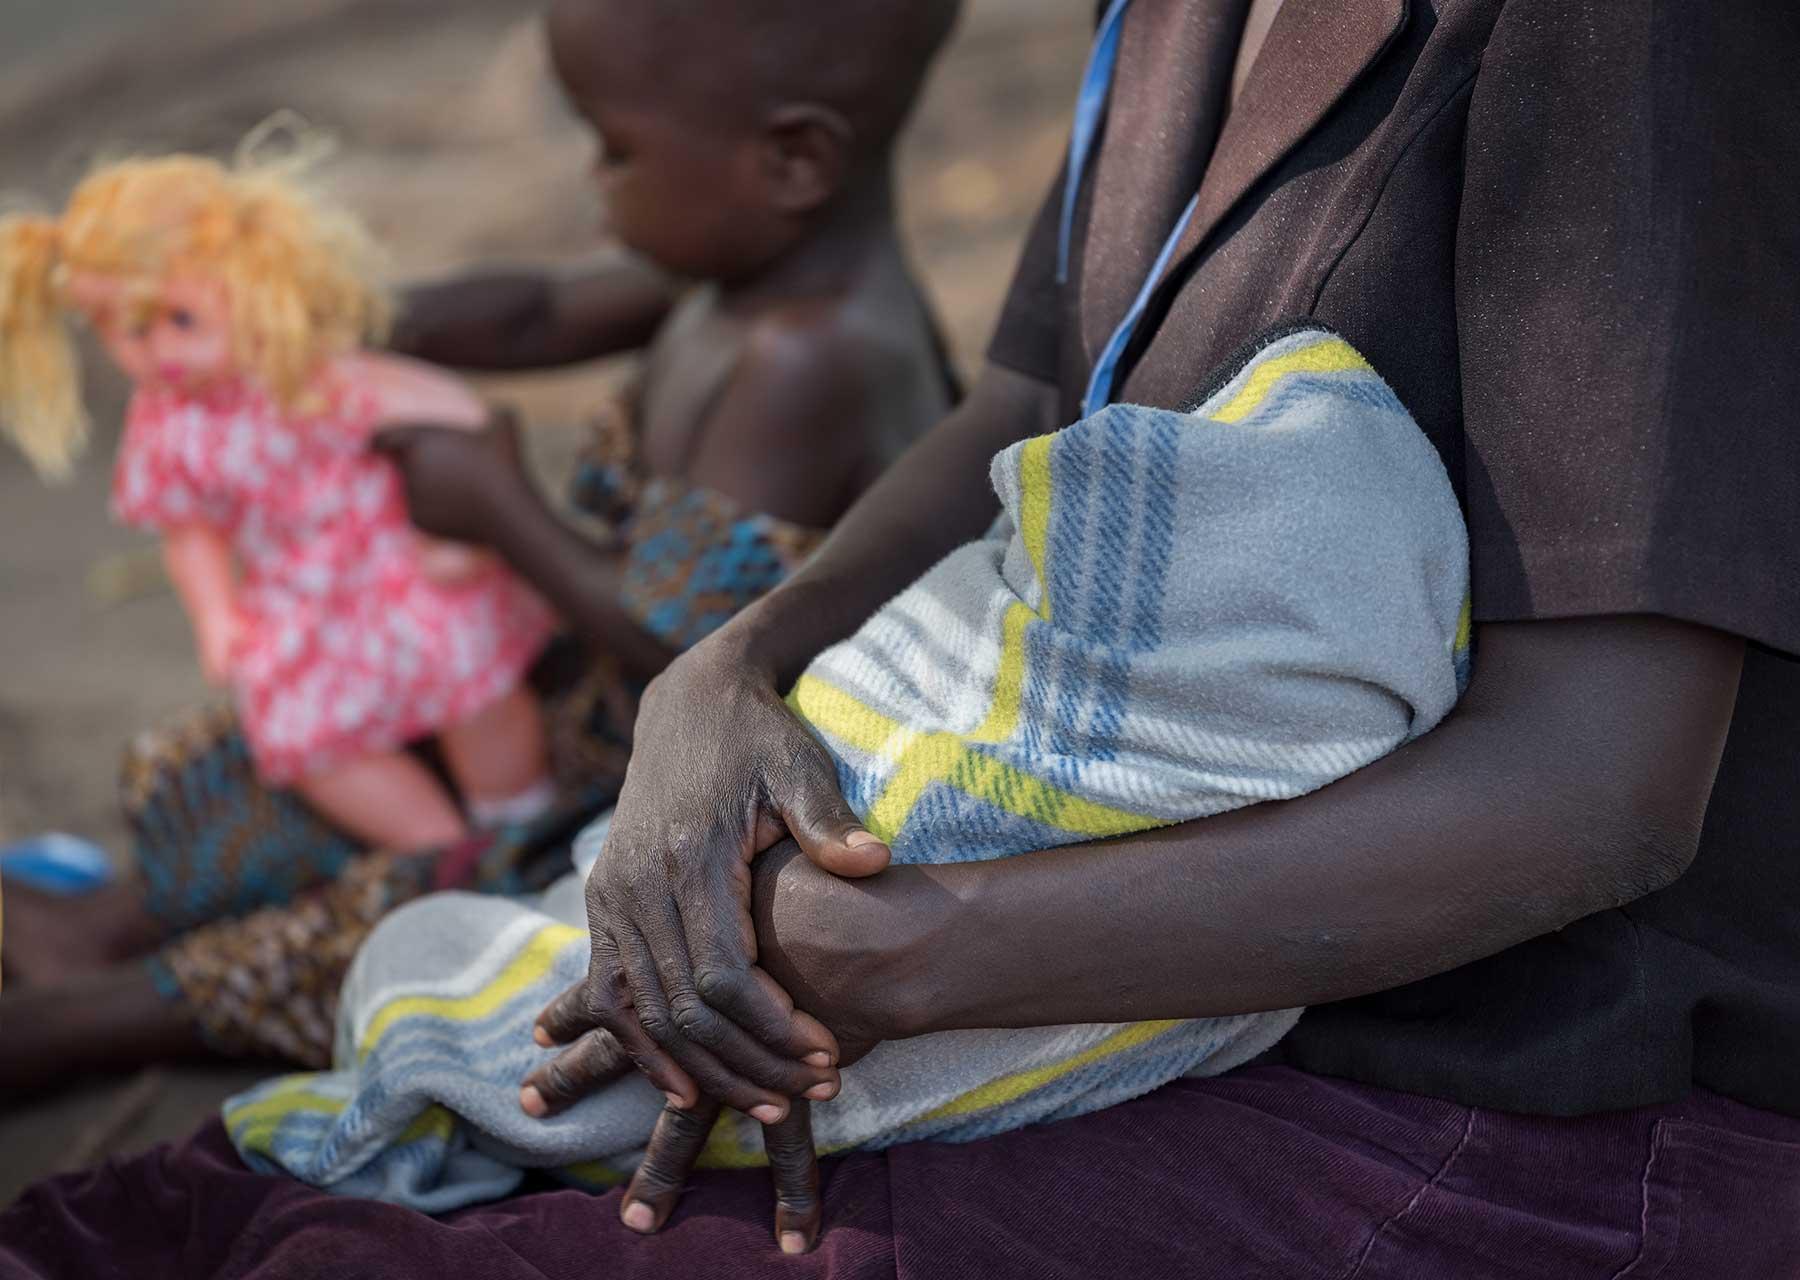 Eine Frau mit ihren Kindern im Iboa-Gesundheitszentrum im Obongi-Distrikt in Norduganda, wo der LWB und Medical Teams International mangelernährte geflüchtete Kinder und ihre Mütter unterstützen